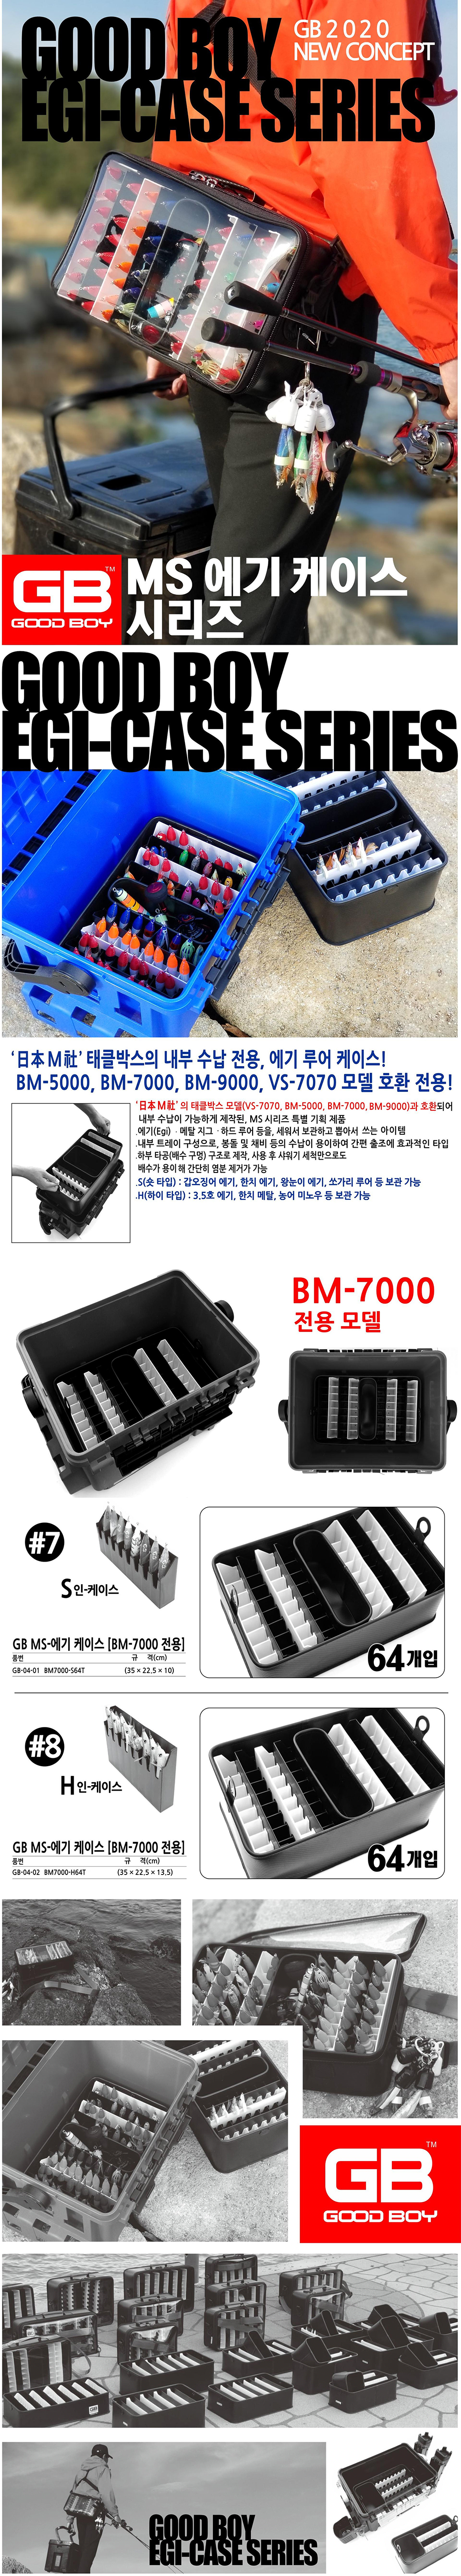 GB MS ̽ BM-7000  GB-04-01 GB-04-02